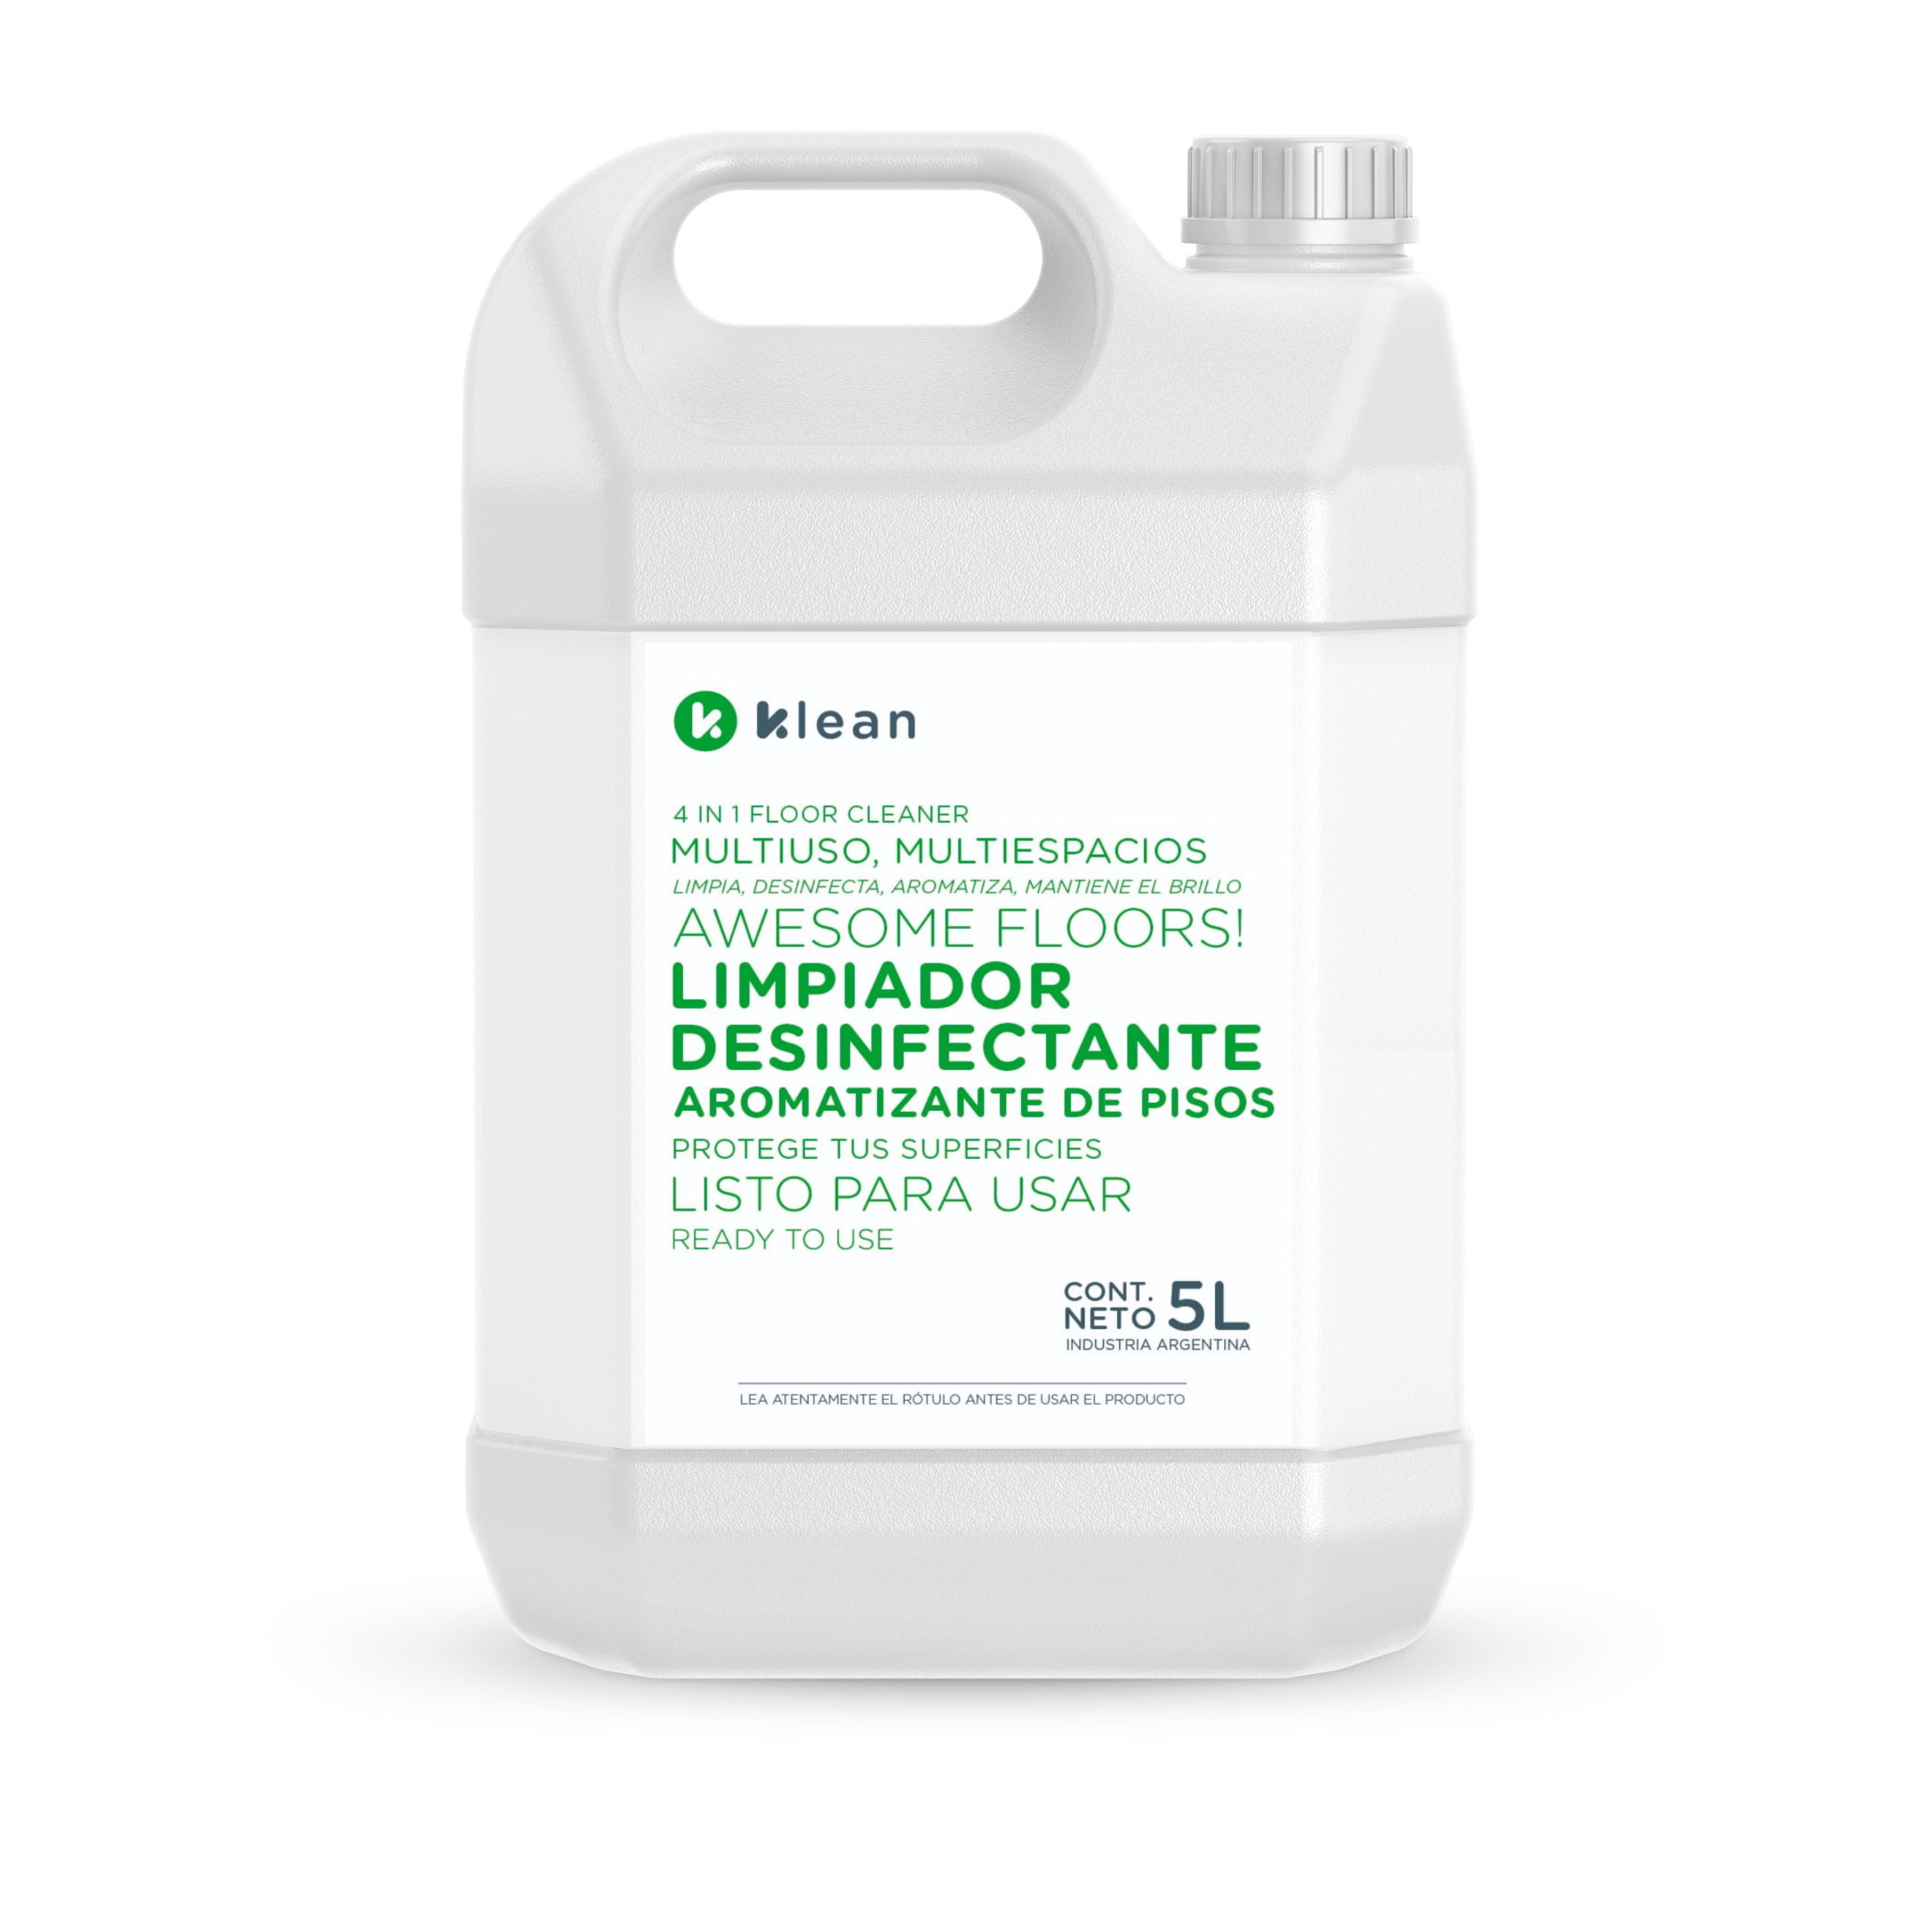 Limpiador Desinfectante Aromatizante de Pisos 5 Litros - Klean Argentina